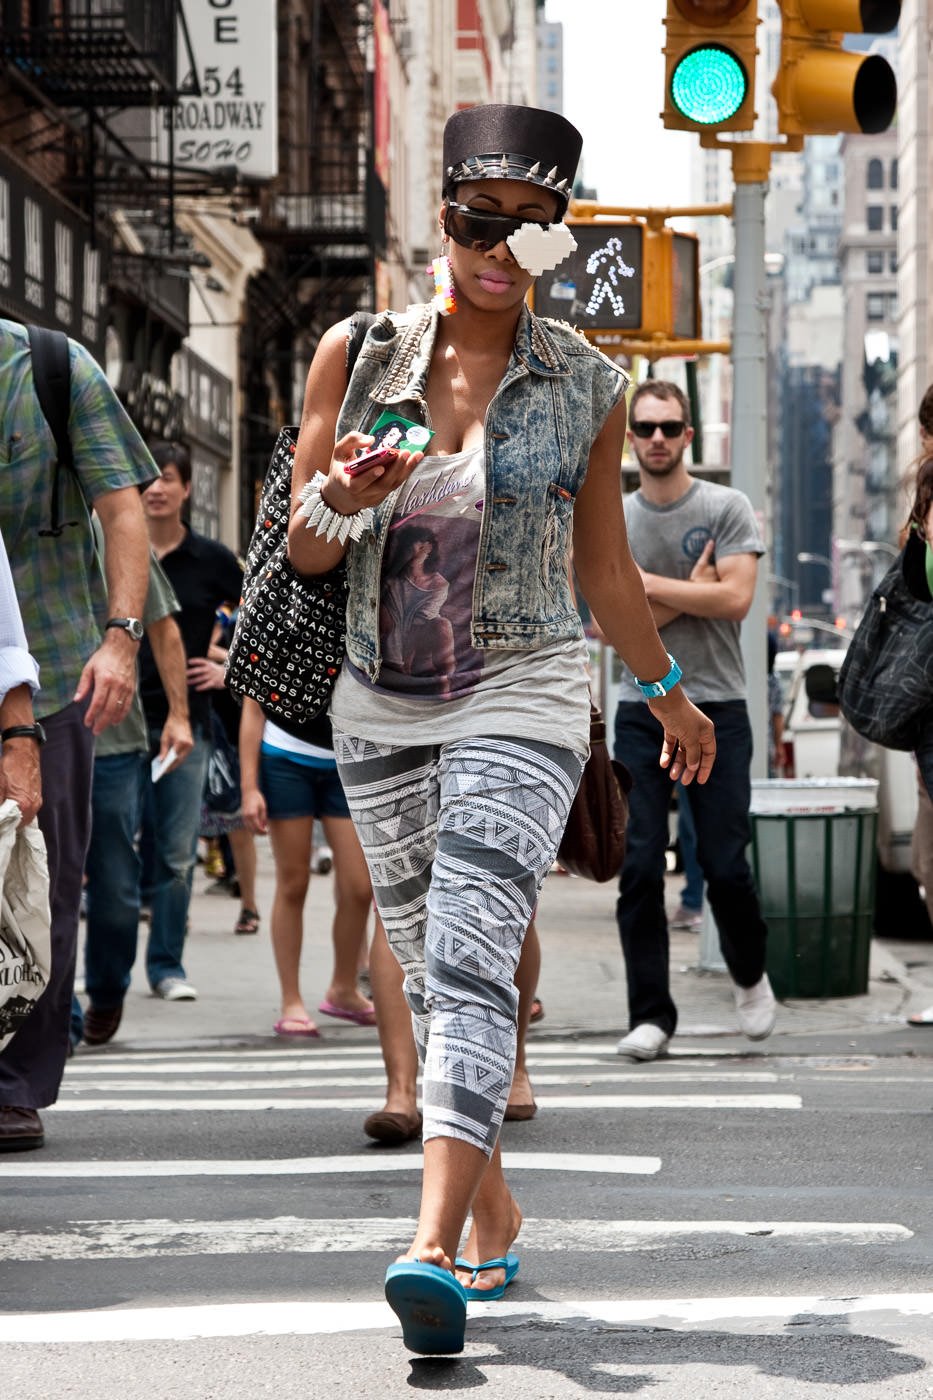 Fotografía callejera: mujer vestida de forma extravagante cruzando la calle